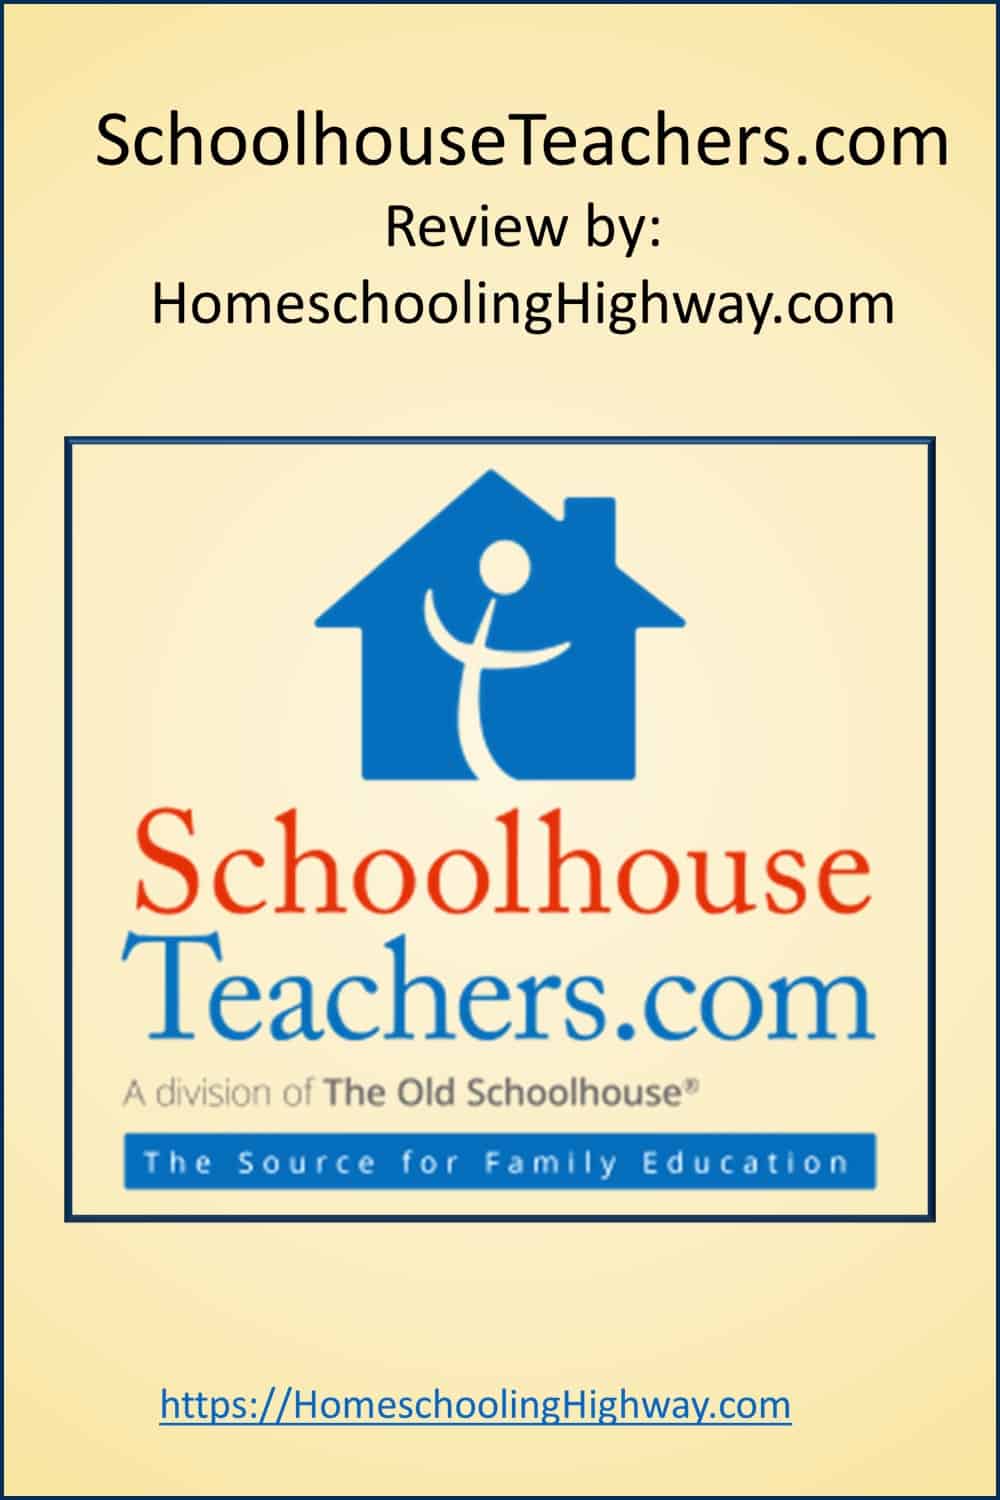 SchoolhouseTeachers.com Review by Homeschooling Highway